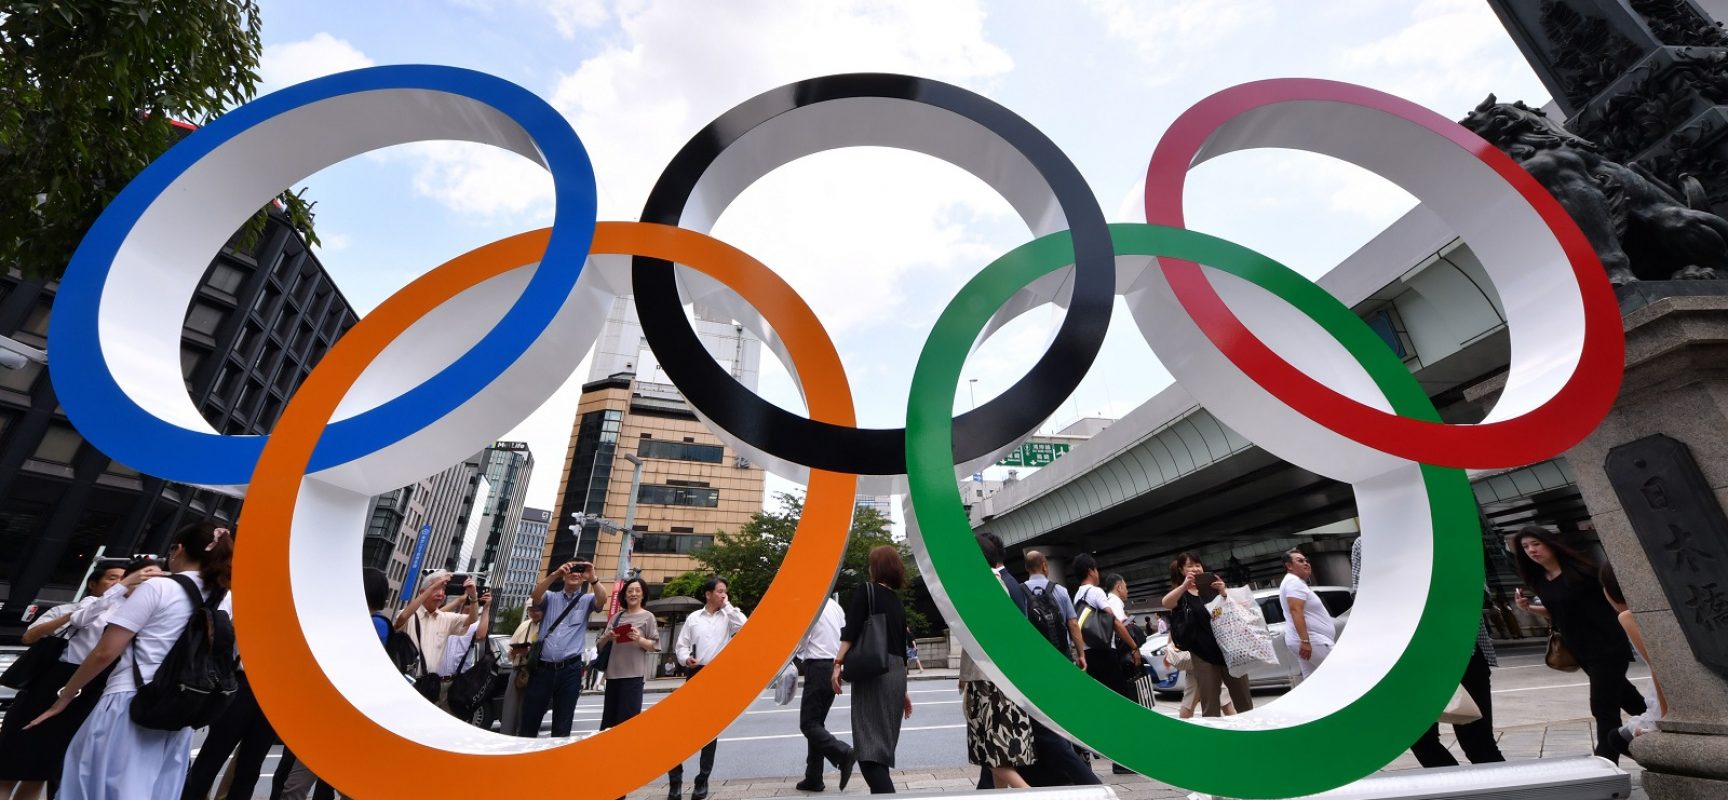 Την ακύρωση των Ολυμπιακών Αγώνων εξετάζει Οργανωτική Επιτροπή λόγω αύξησης κρουσμάτων κορονοϊού